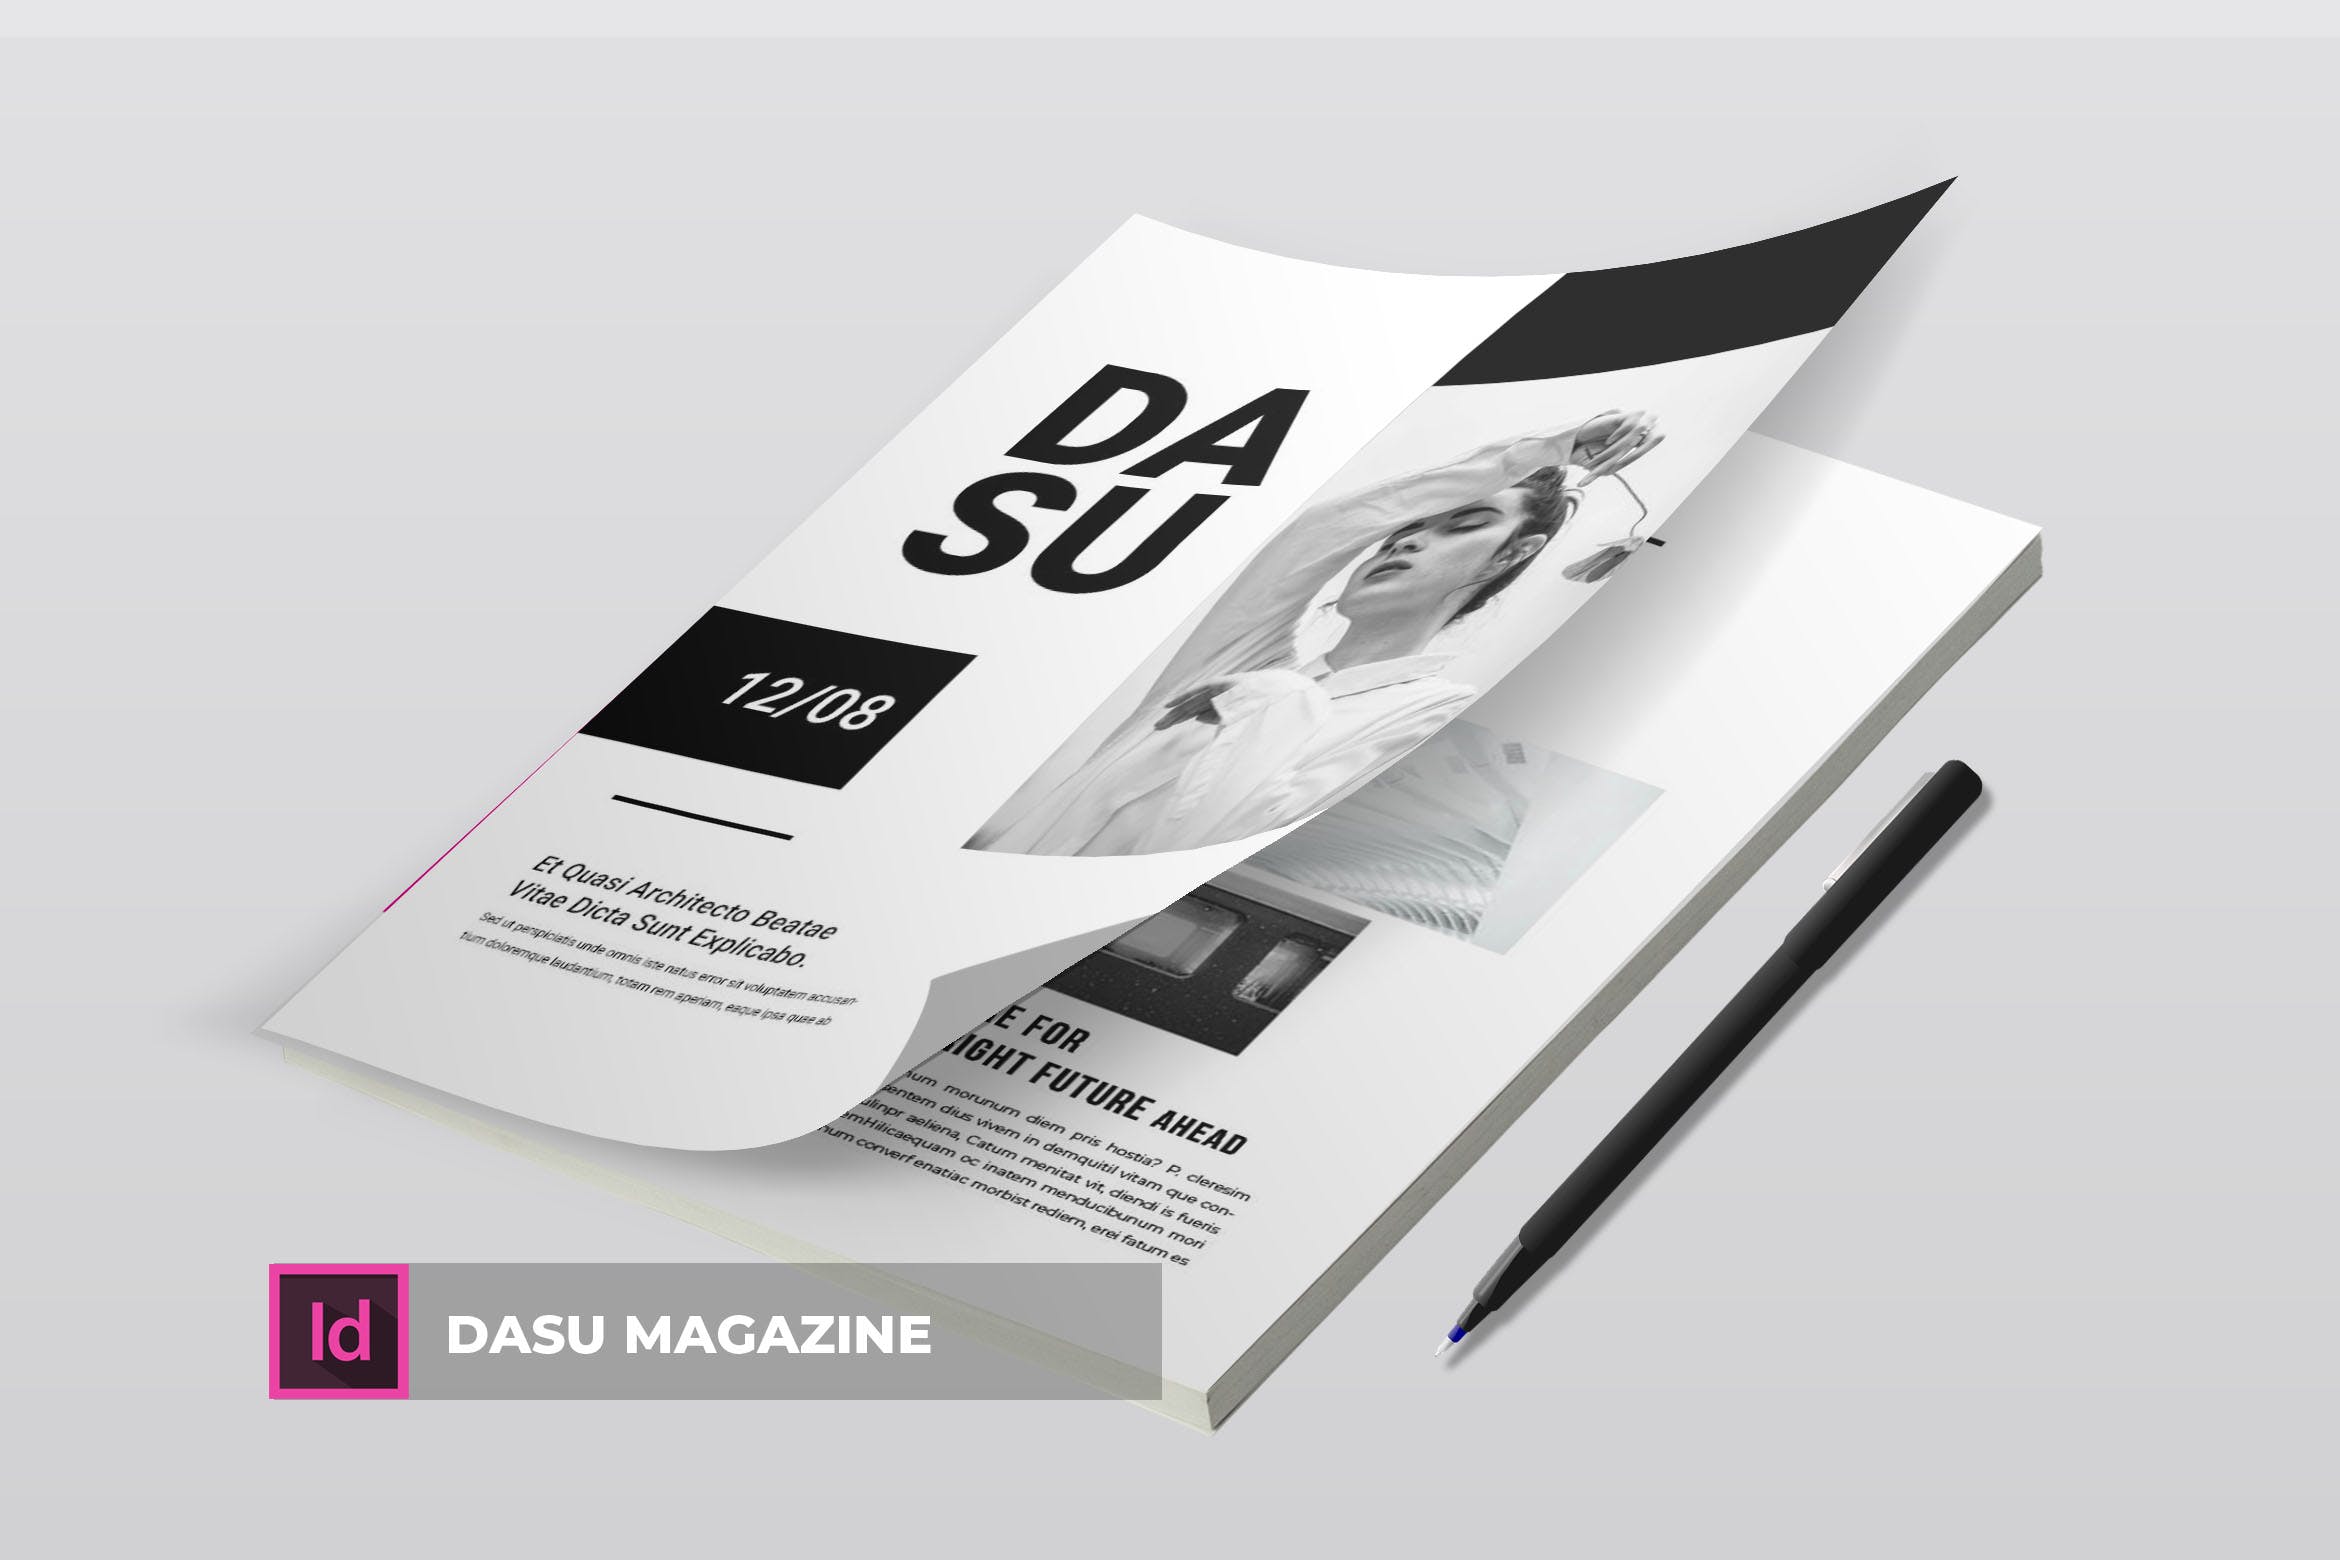 摄影艺术/时装设计主题大洋岛精选杂志排版设计模板 Dasu | Magazine Template插图